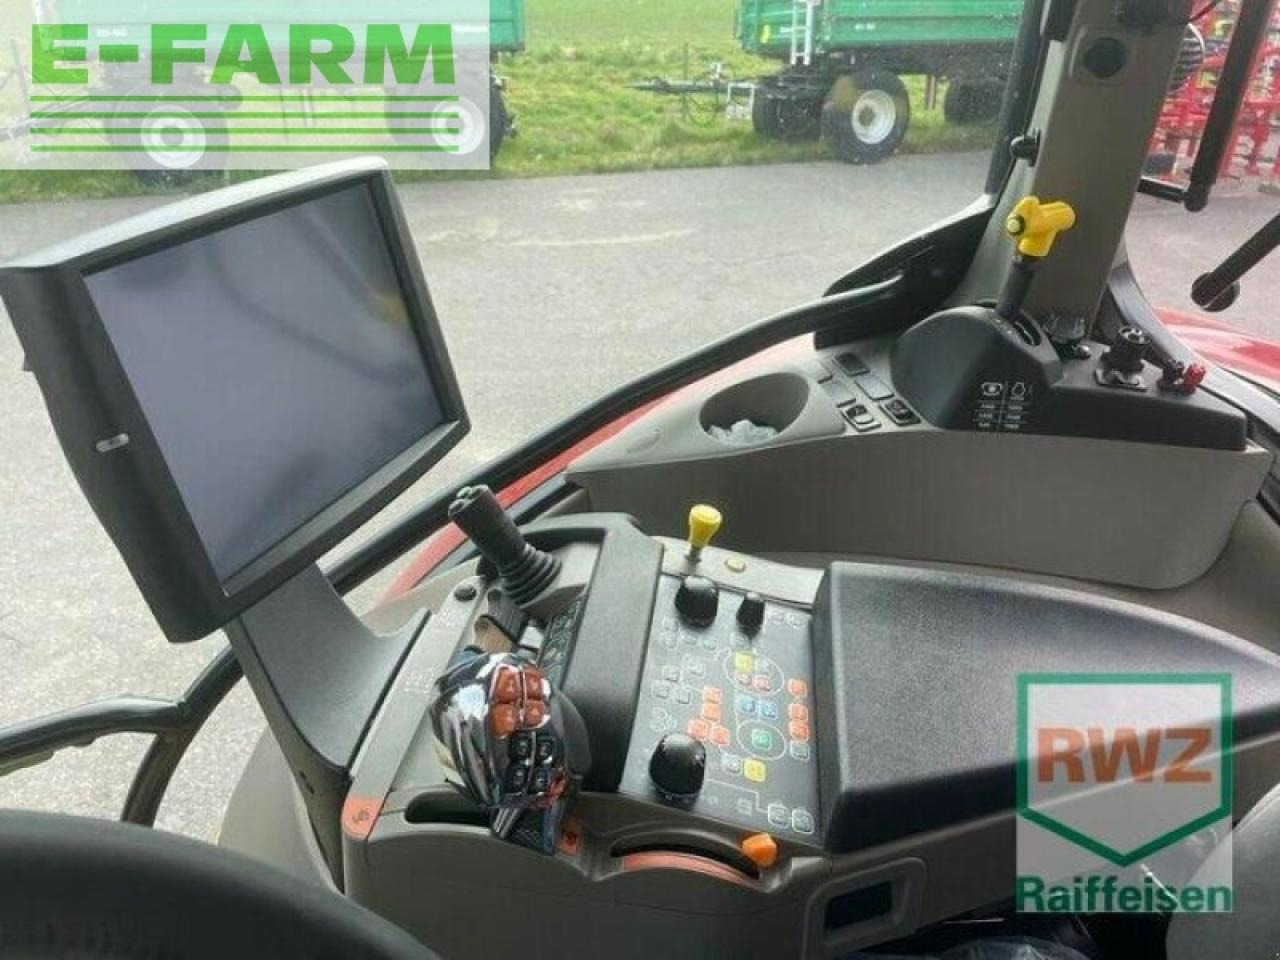 Traktor Case-IH maxxum 125 multicontroller: slika 4